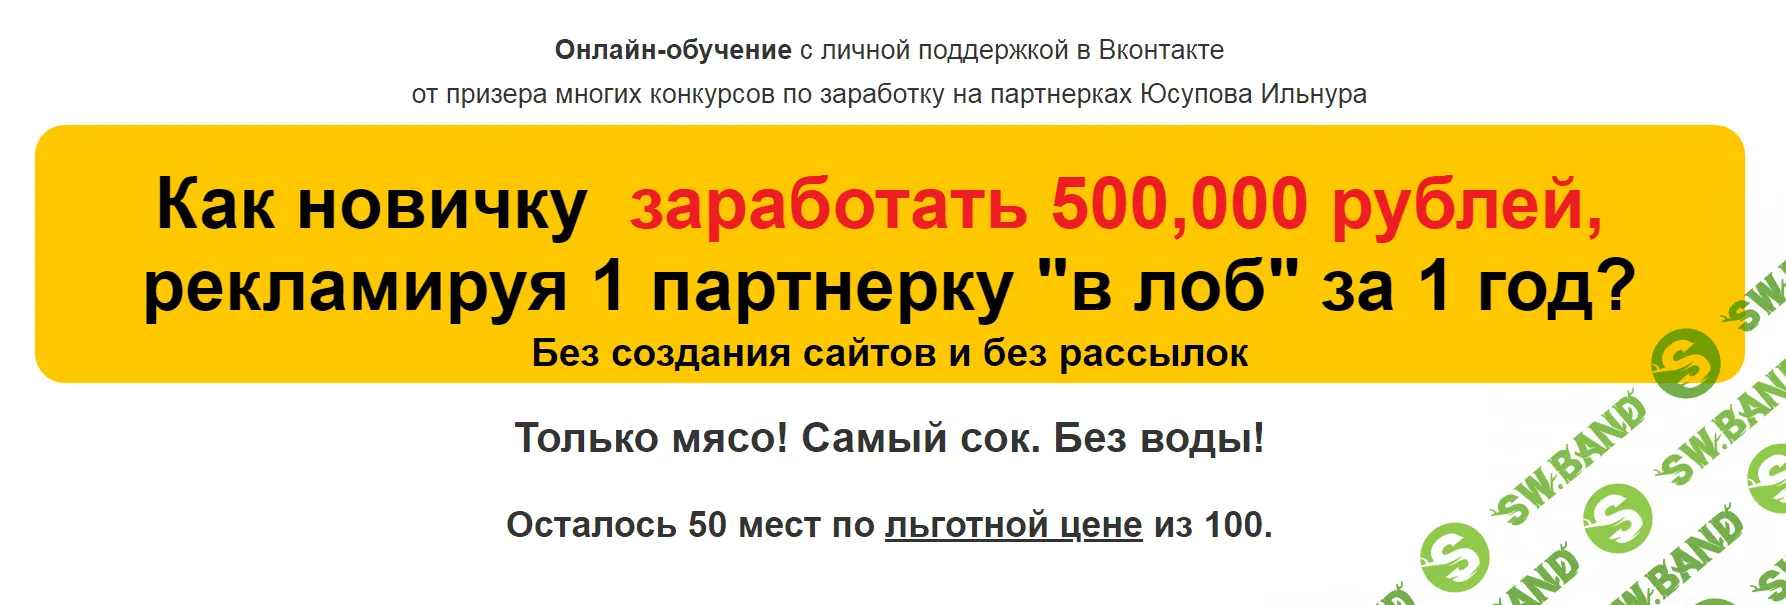 [Ильнур Юсупов] 500.000 руб. за 1 год, рекламируя 1 партнерку в РСЯ (2019)